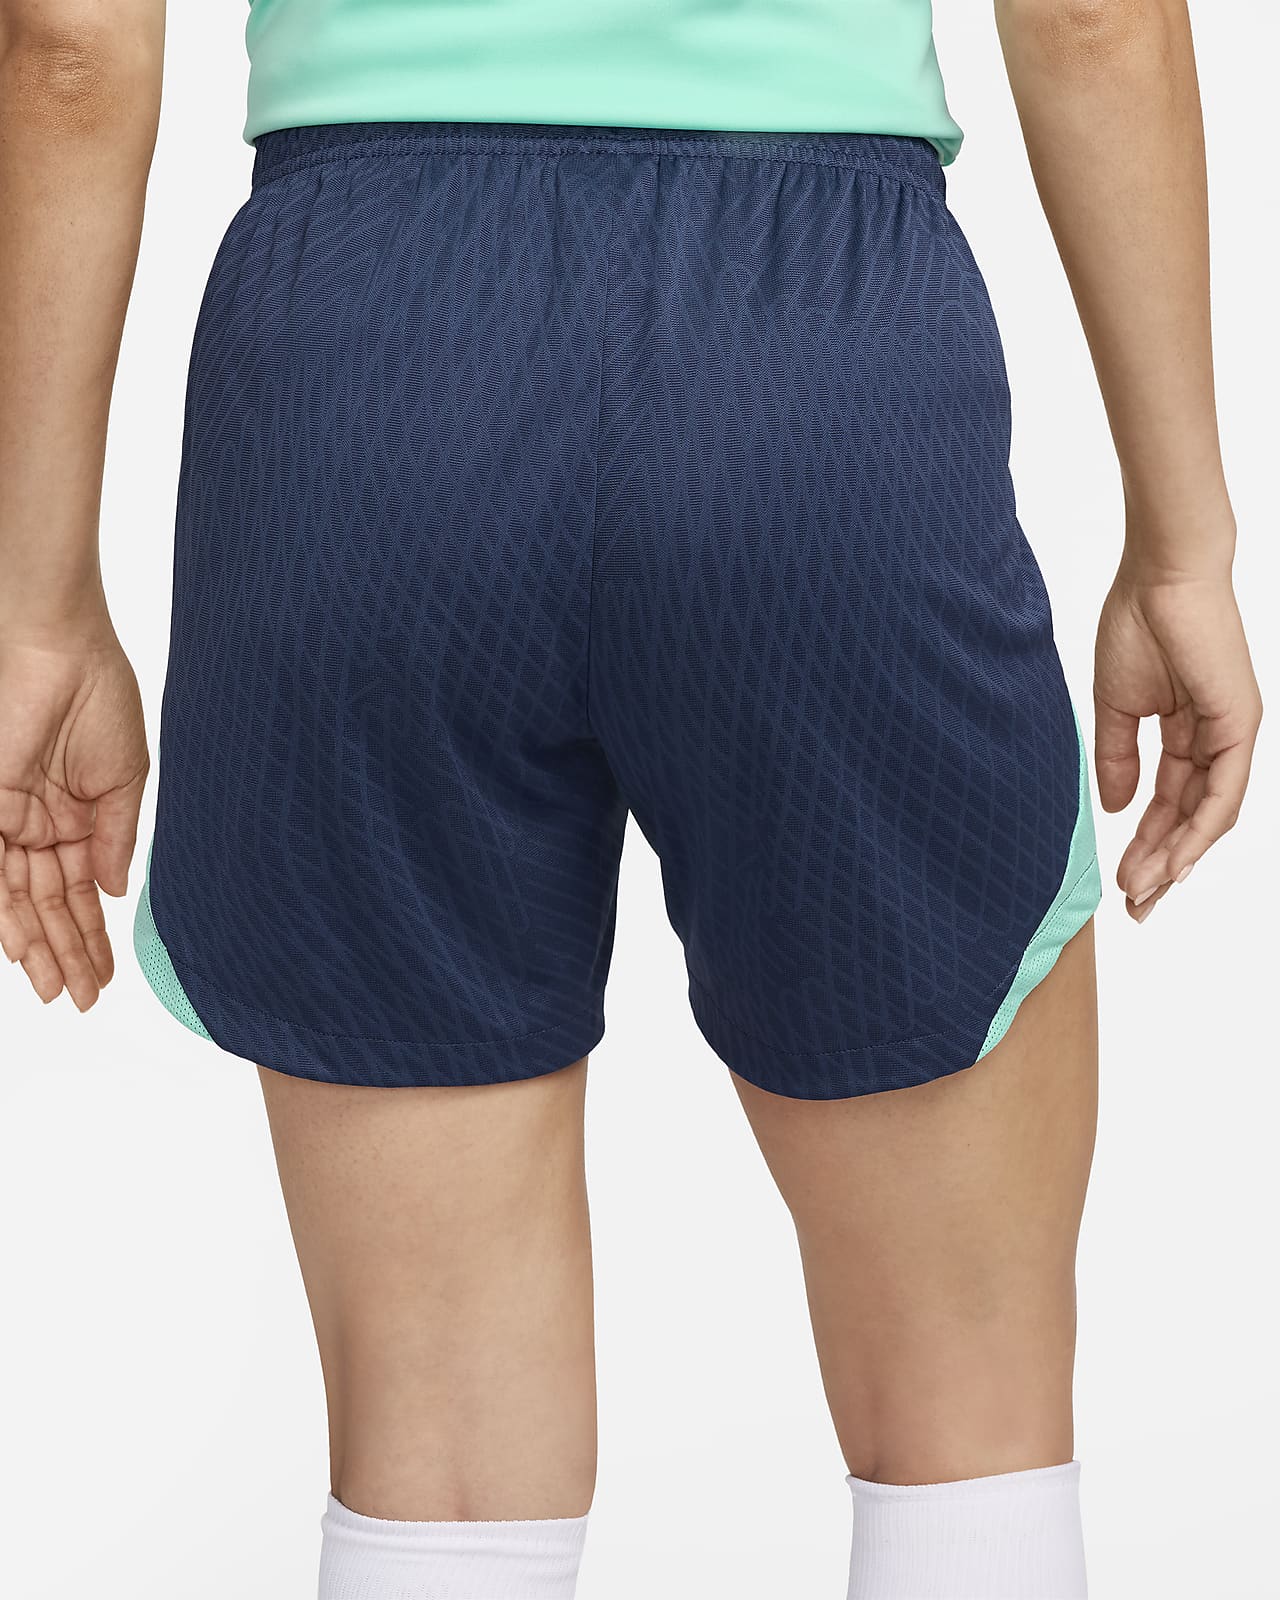 Stefans Soccer - Wisconsin - Nike Women's Dri-FIT Knit II Soccer Shorts -  Black / White